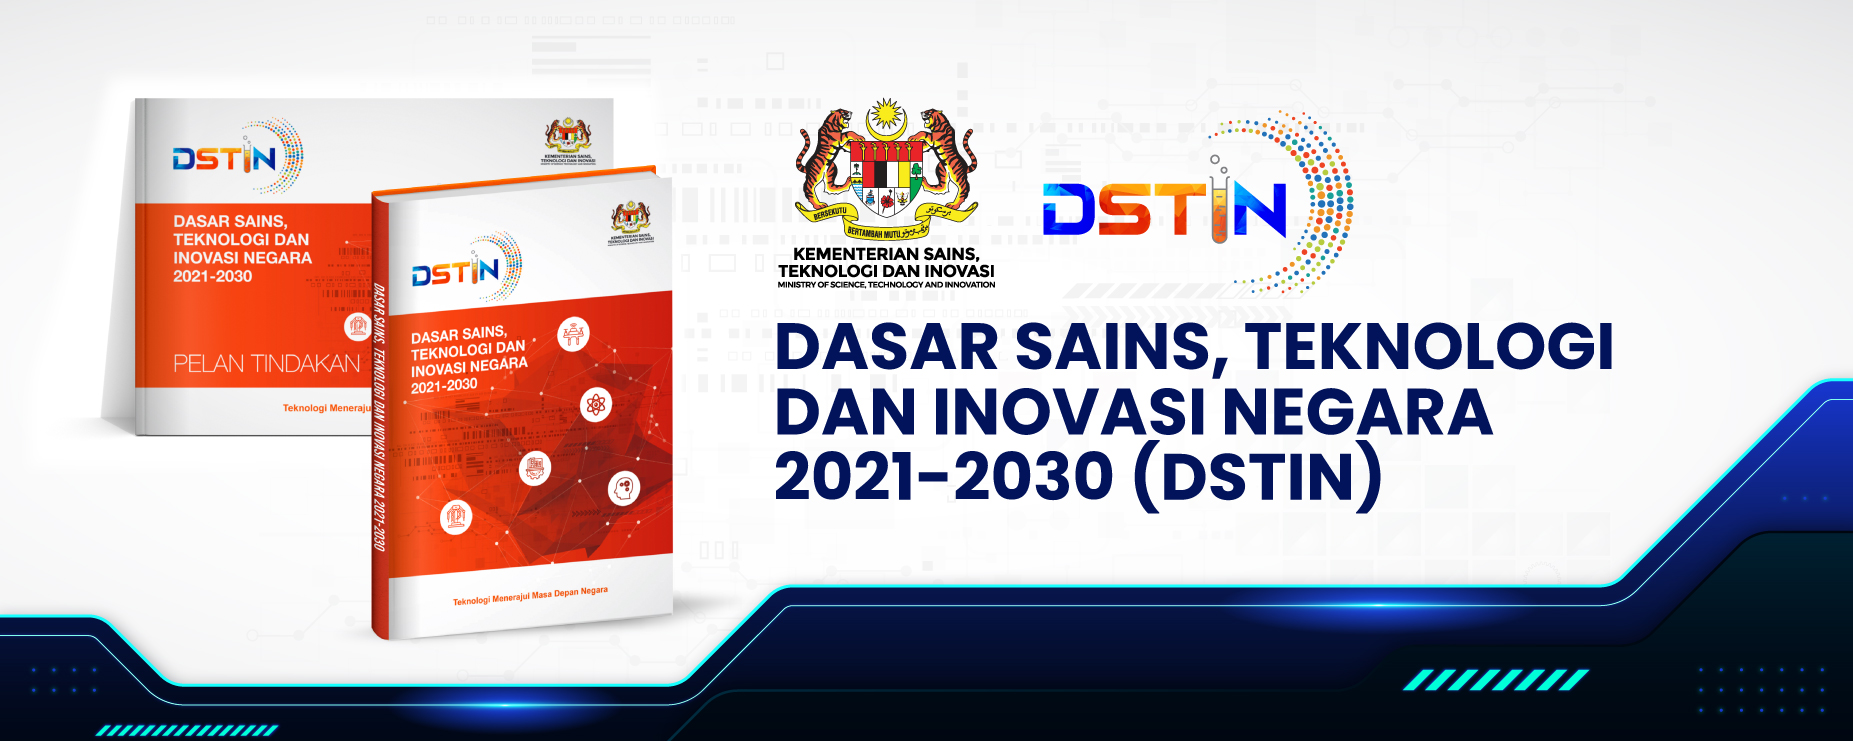 Dasar Sains, Teknologi dan Inovasi Negara 2021 – 2030 (DSTIN)